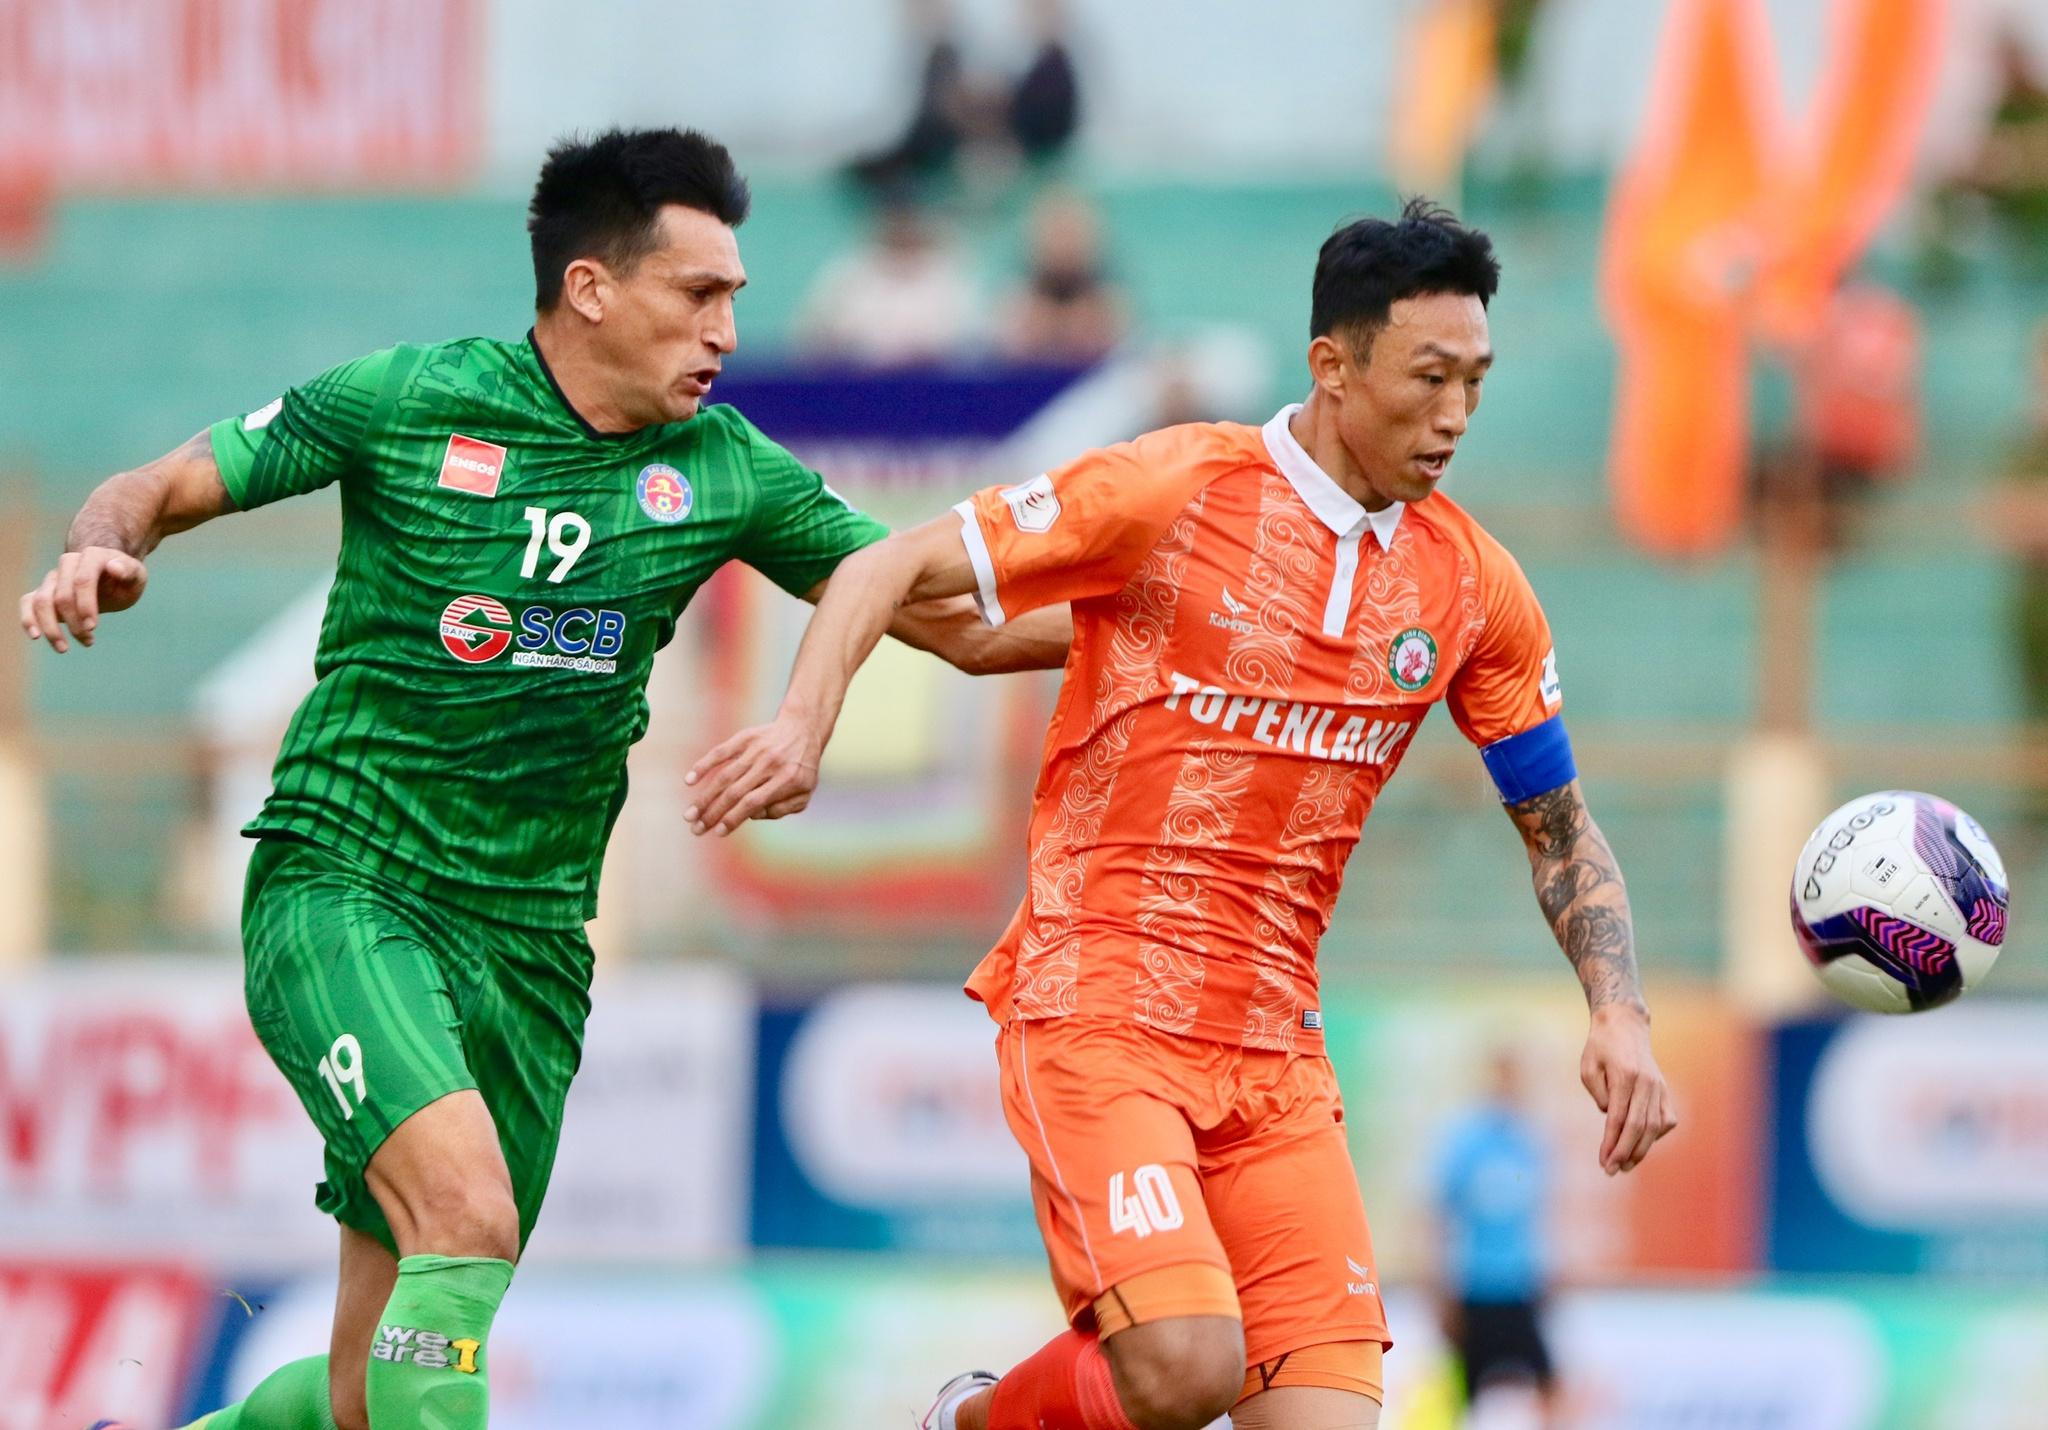 Kết quả V-League 2021, Bình Định 1-0 Sài Gòn FC: Hồ Tấn Tài khiến 'hung thần' Đỗ Merlo nín lặng! - ảnh 6